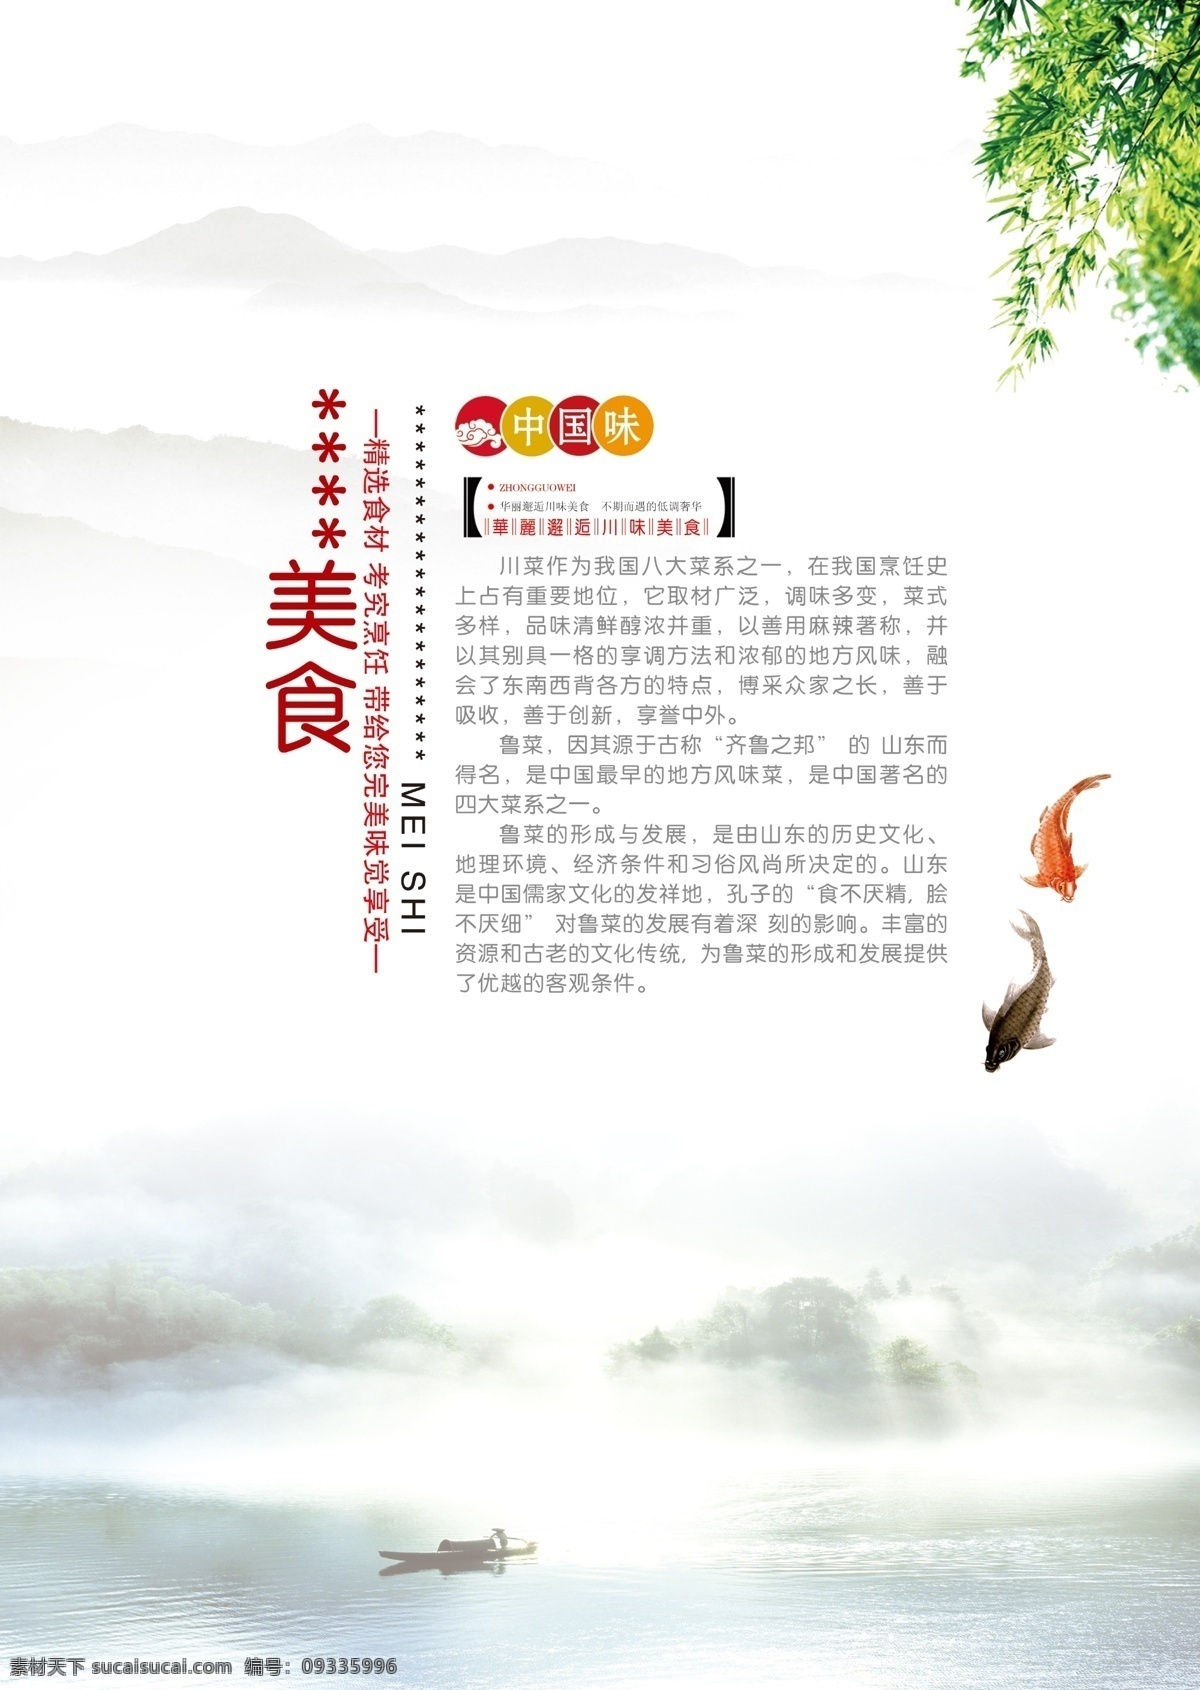 古典 酒店 菜 牌 川菜 美食 文化 祥云 鱼 中国味 原创设计 原创海报